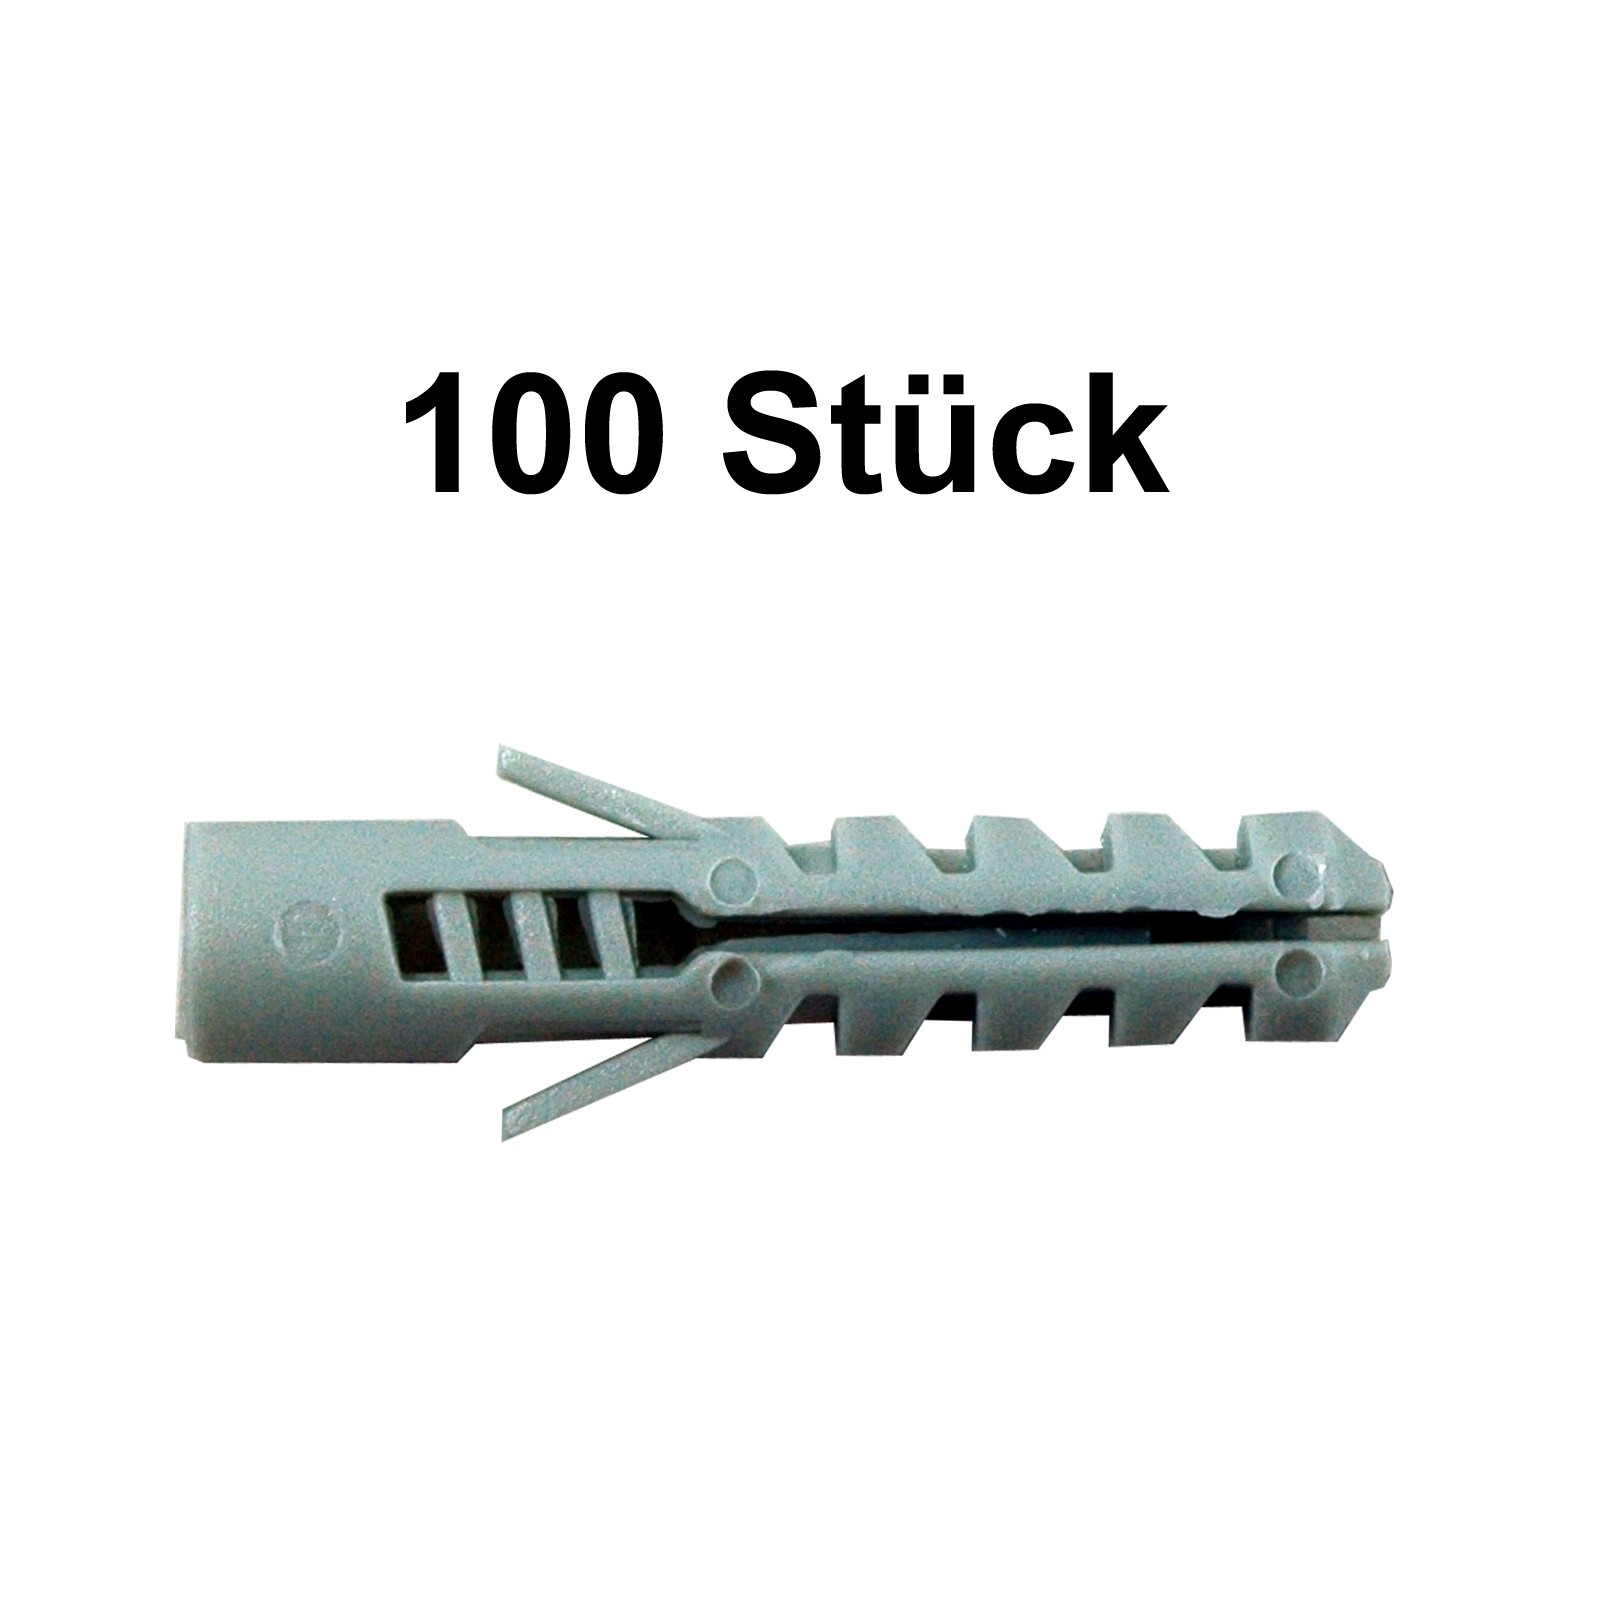 100 Stück FaKKT-Nylondübel 8x40 mm für Schrauben 4,5-6 mm Bohrer 8 mm